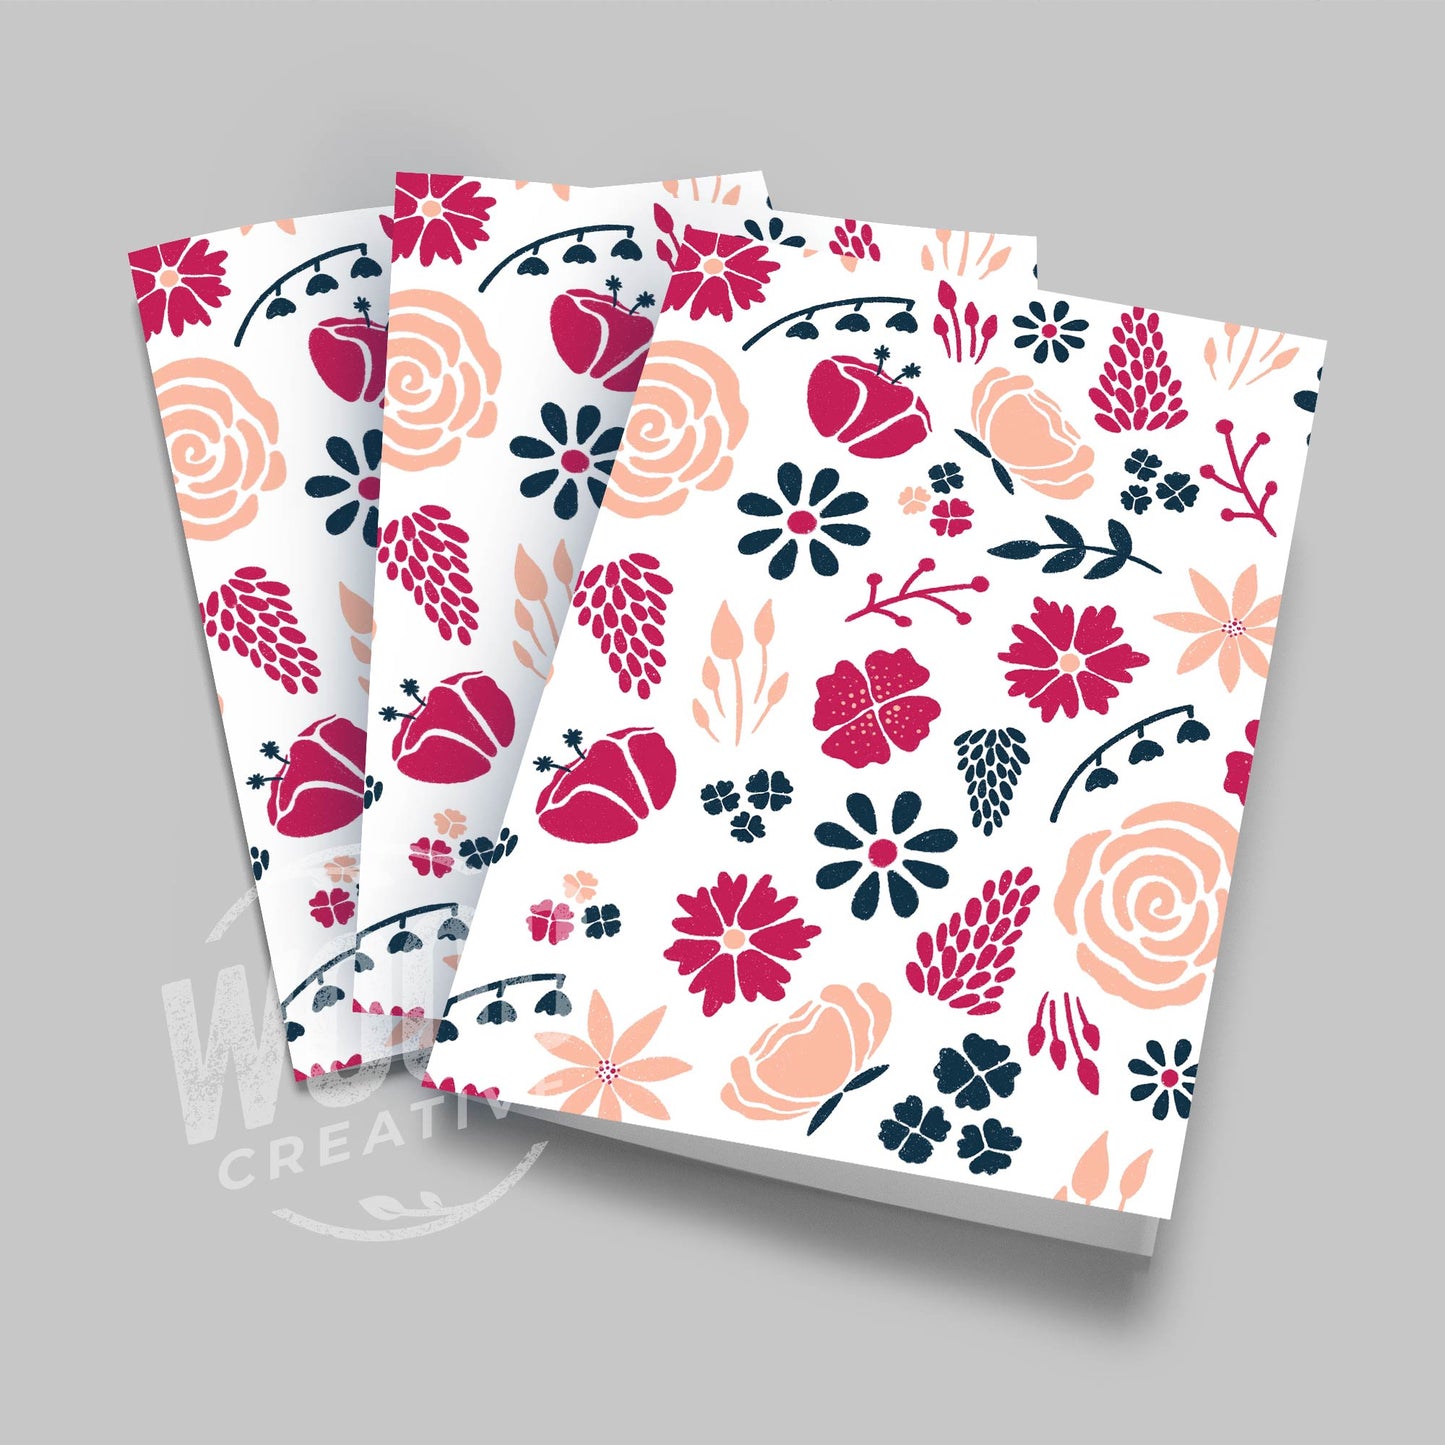 Floral Greeting Card Bundle - Pack of 3